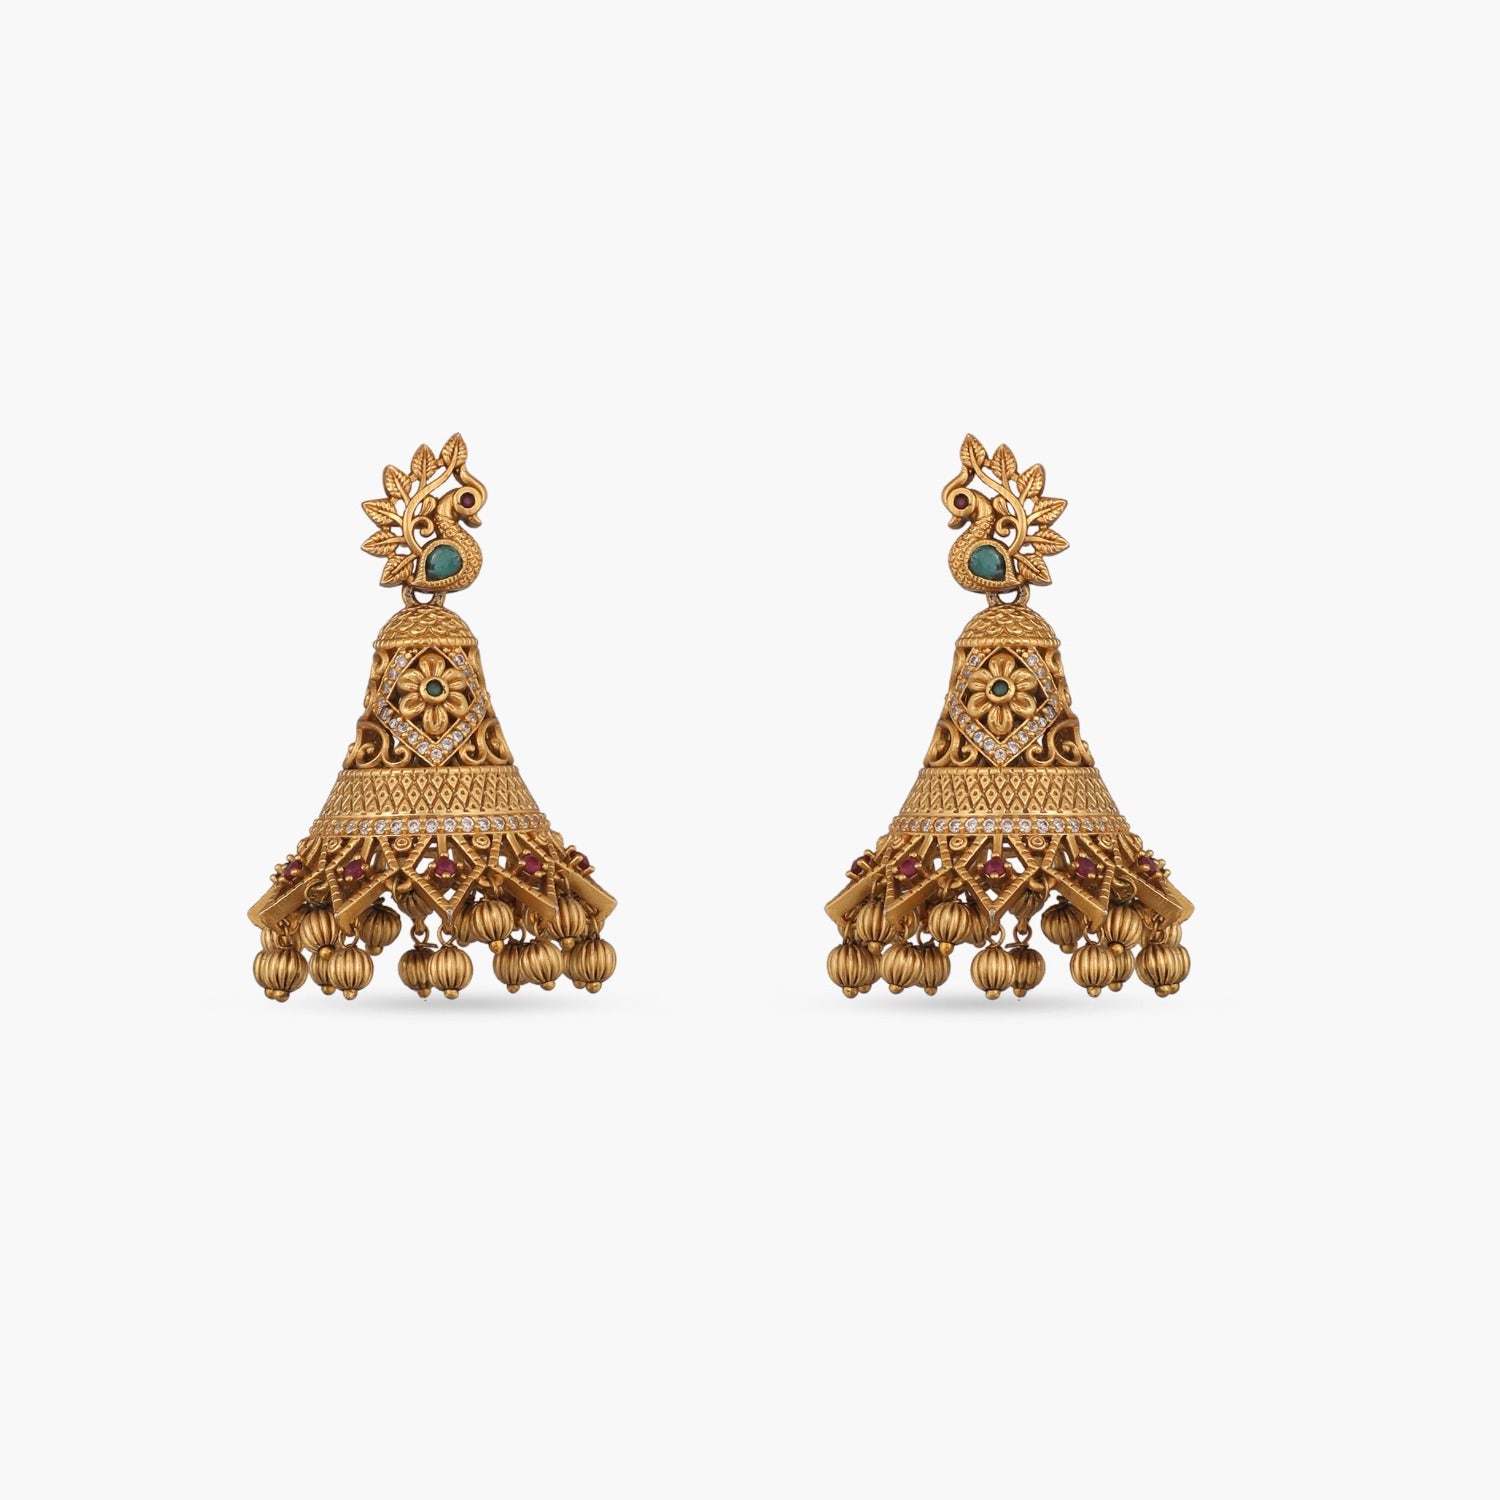 Earrings Designs Gold गोल्ड इयररिंग के ये लेटेस्ट डिजाइन आपको देंगे खूबसूरत  लुक यहां देखें लिस्ट - Earrings Designs Gold Latest Perfect For Daily Use  Like Studs Jhumkas